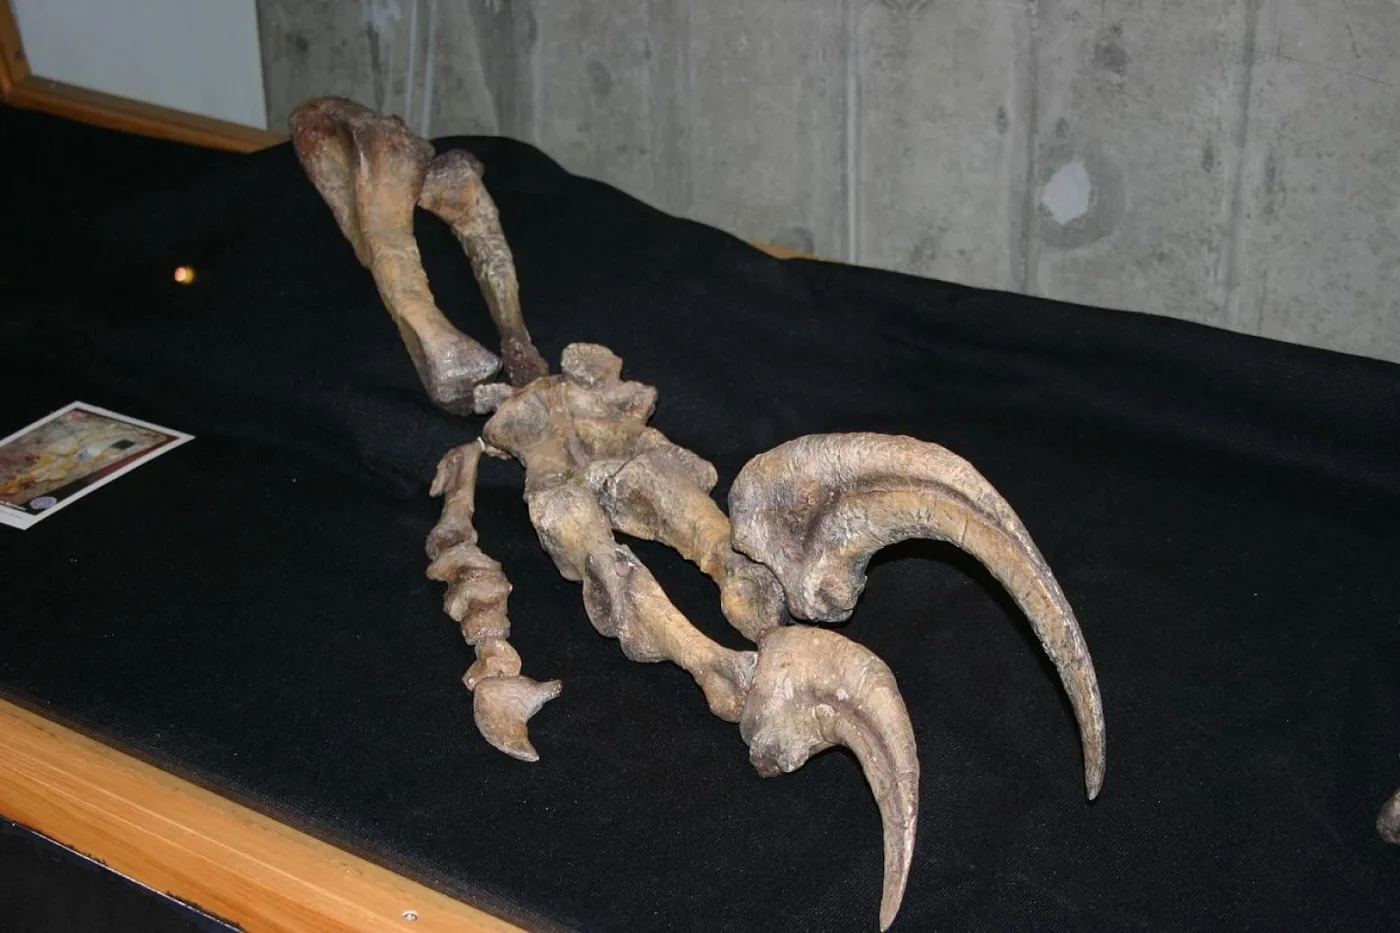 Mano del megarraptor hallado en la patagonia